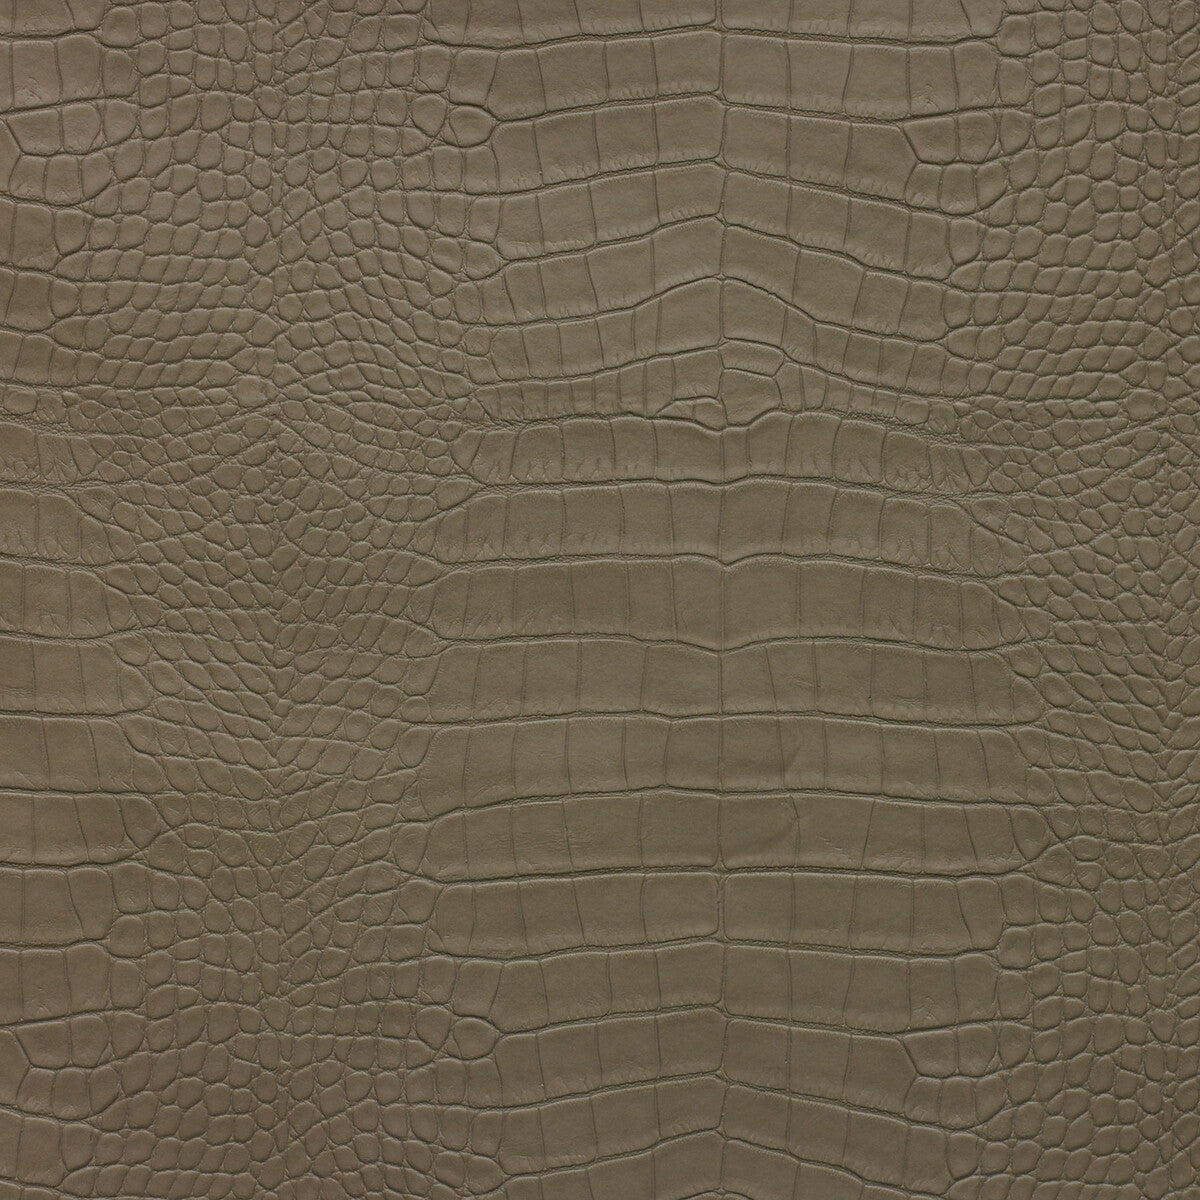 Kravet Design fabric in ankora-106 color - pattern ANKORA.106.0 - by Kravet Design